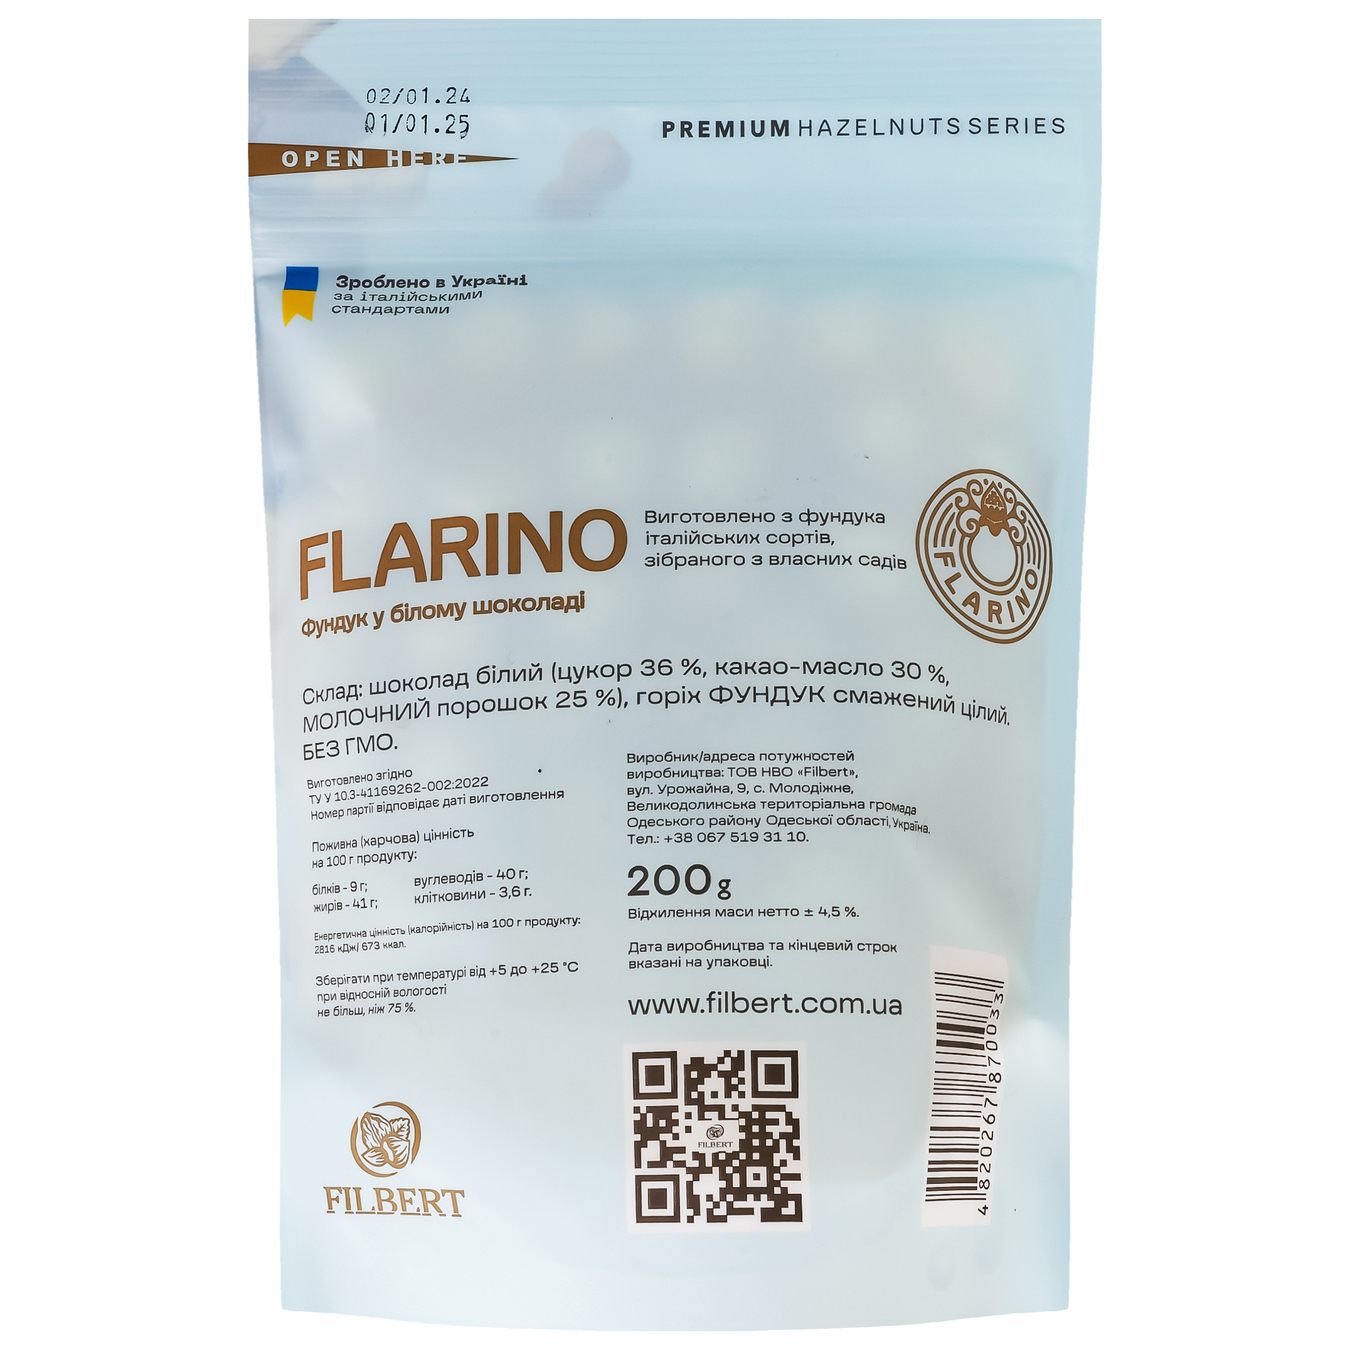 Фундук Flarino у білому шоколаді 200г 3